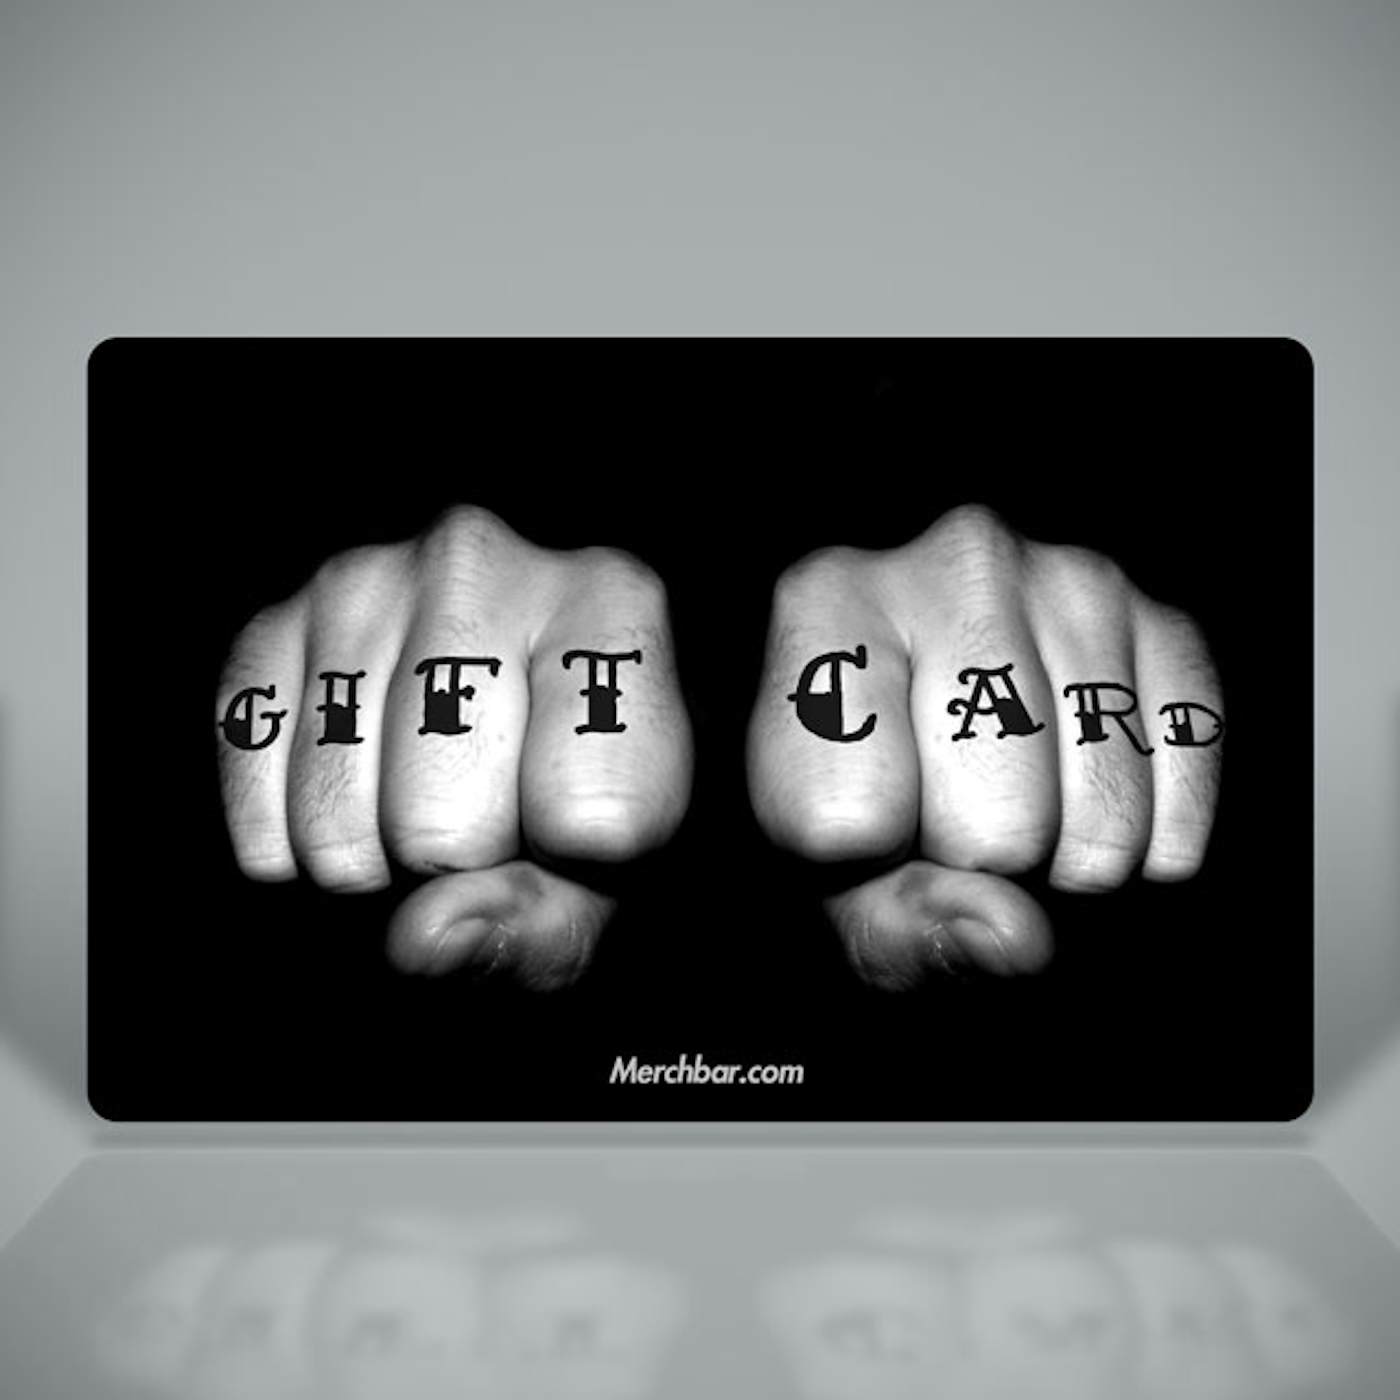 Merchbar Gift Cards Tattooed Fists Merchbar Gift Card